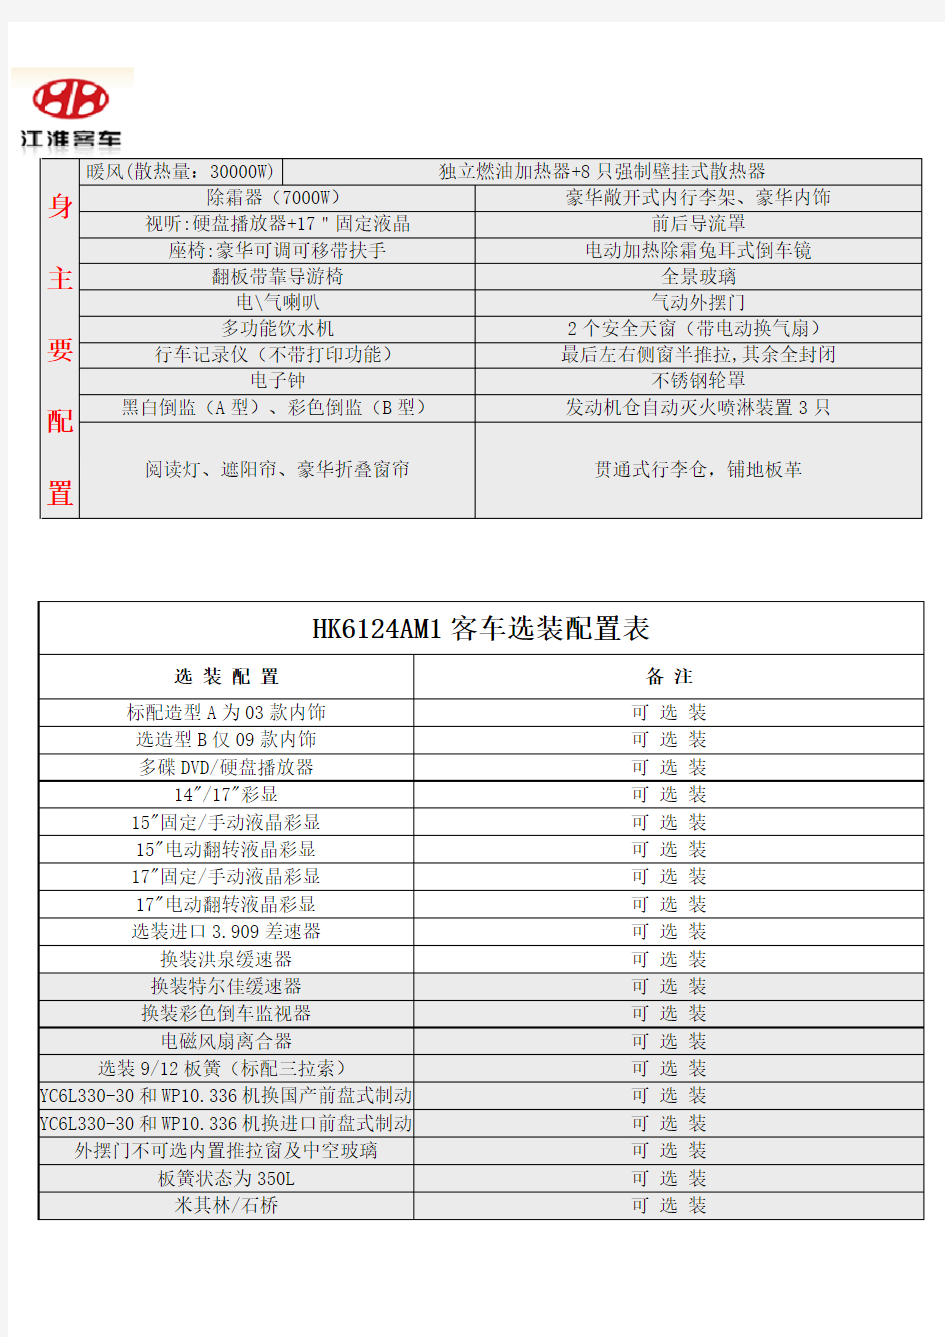 江淮HK6124AM1型客车技术配置参数及图片